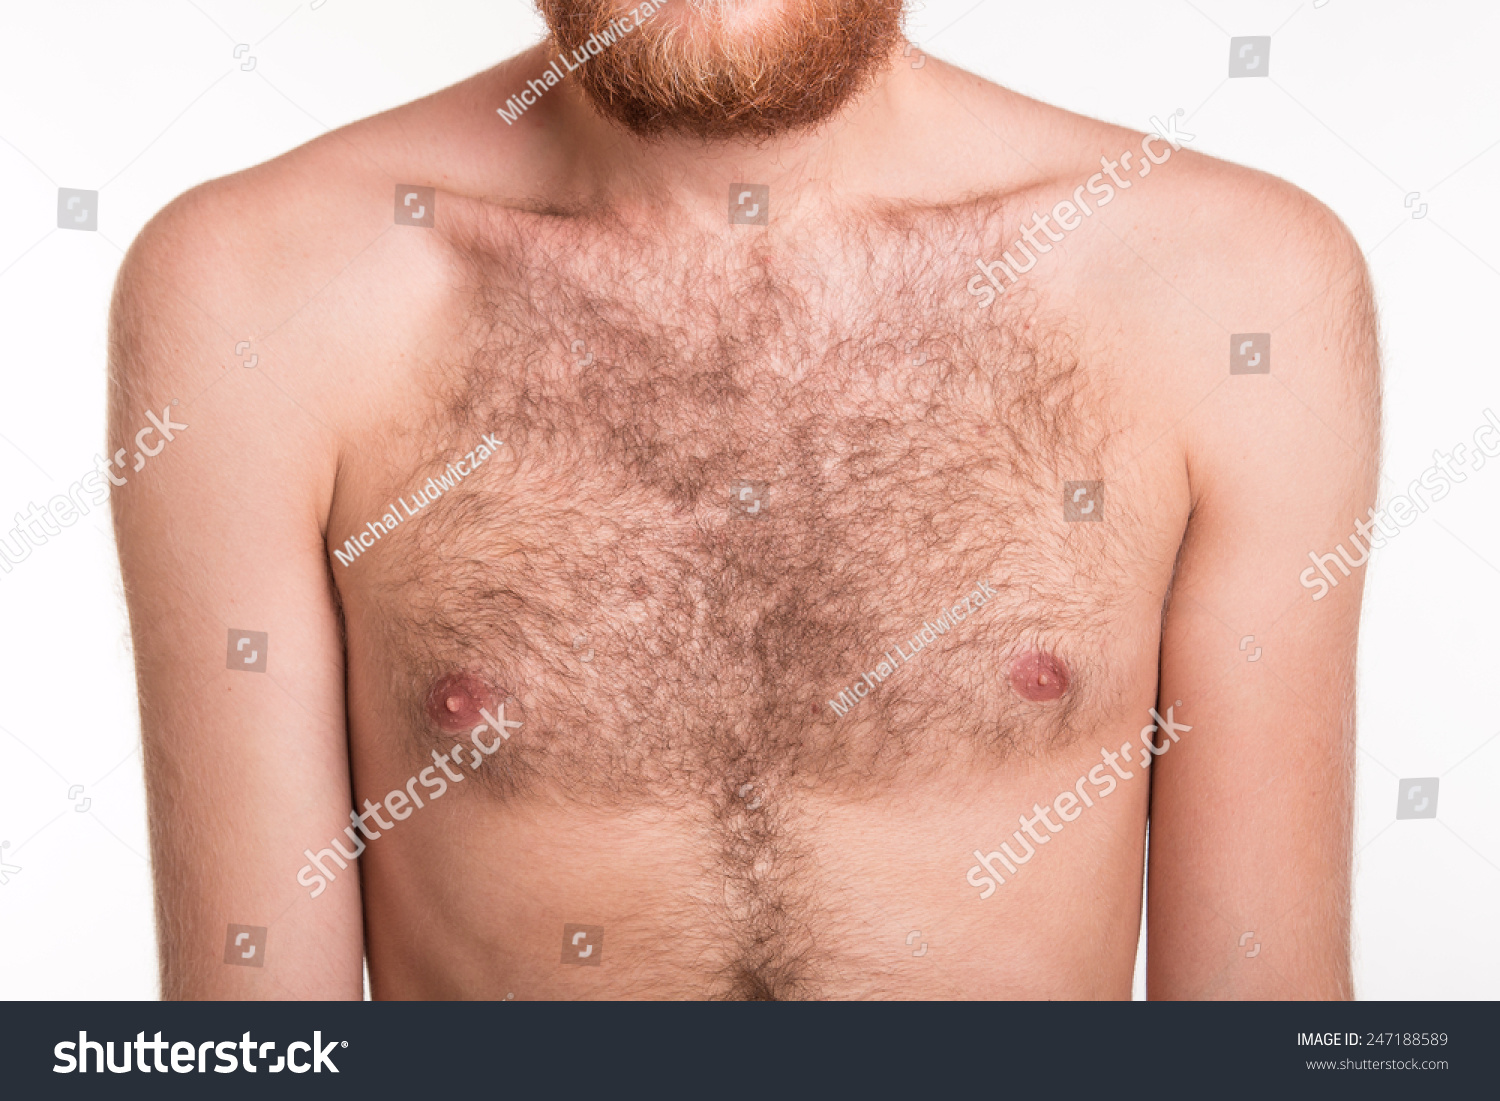 депиляция на груди у мужчин фото 25